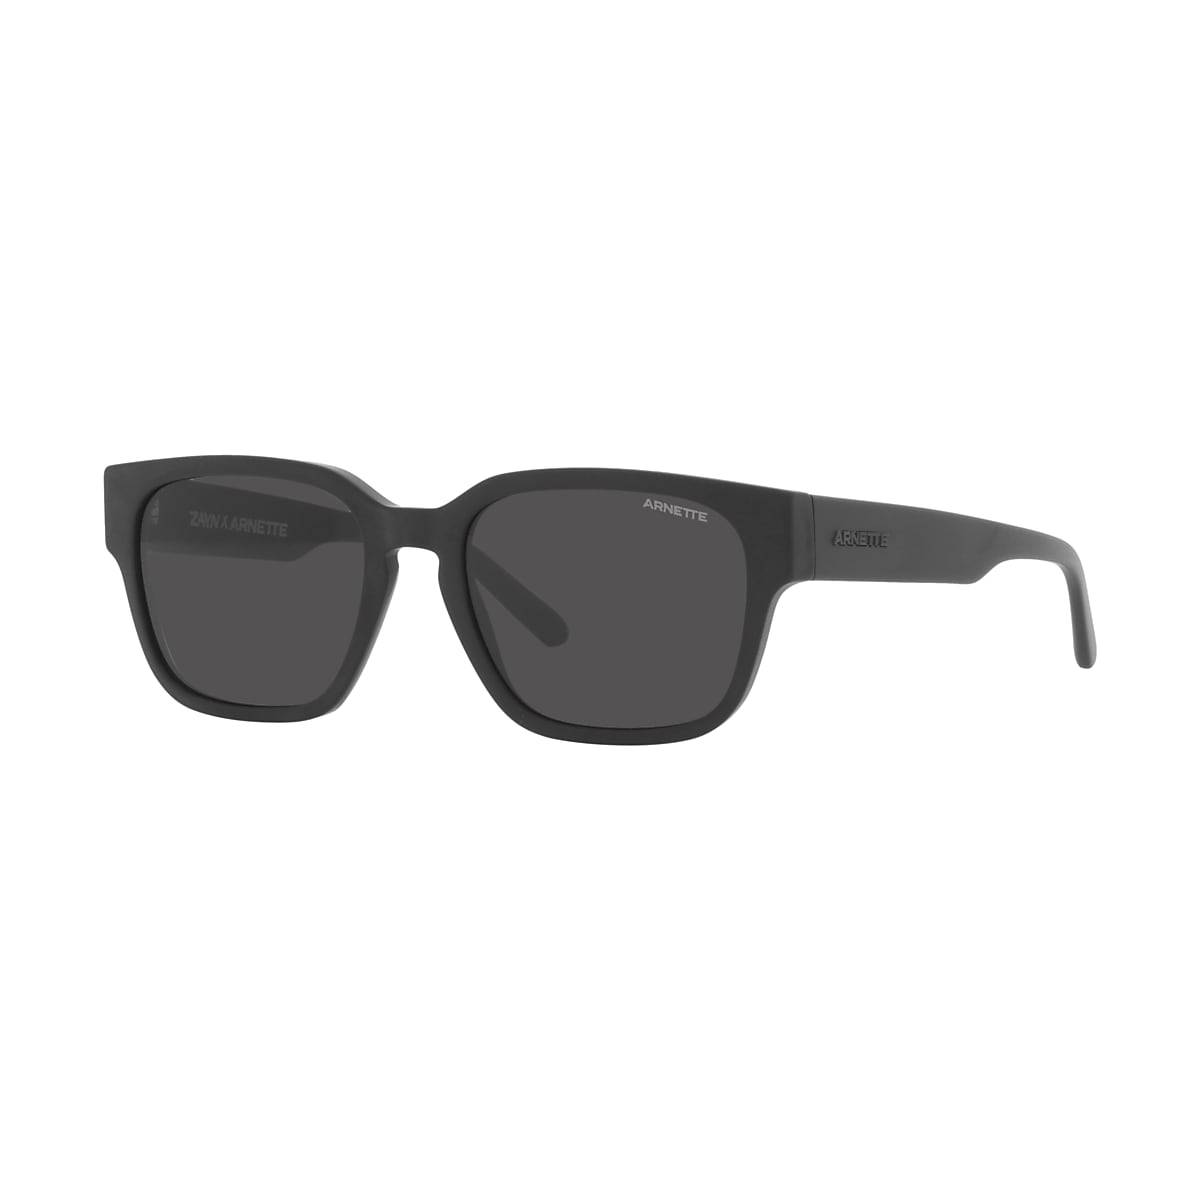 Unisex Combo offer Pack of 2 black shades rectangular jet black zet black  sunglass and baseball